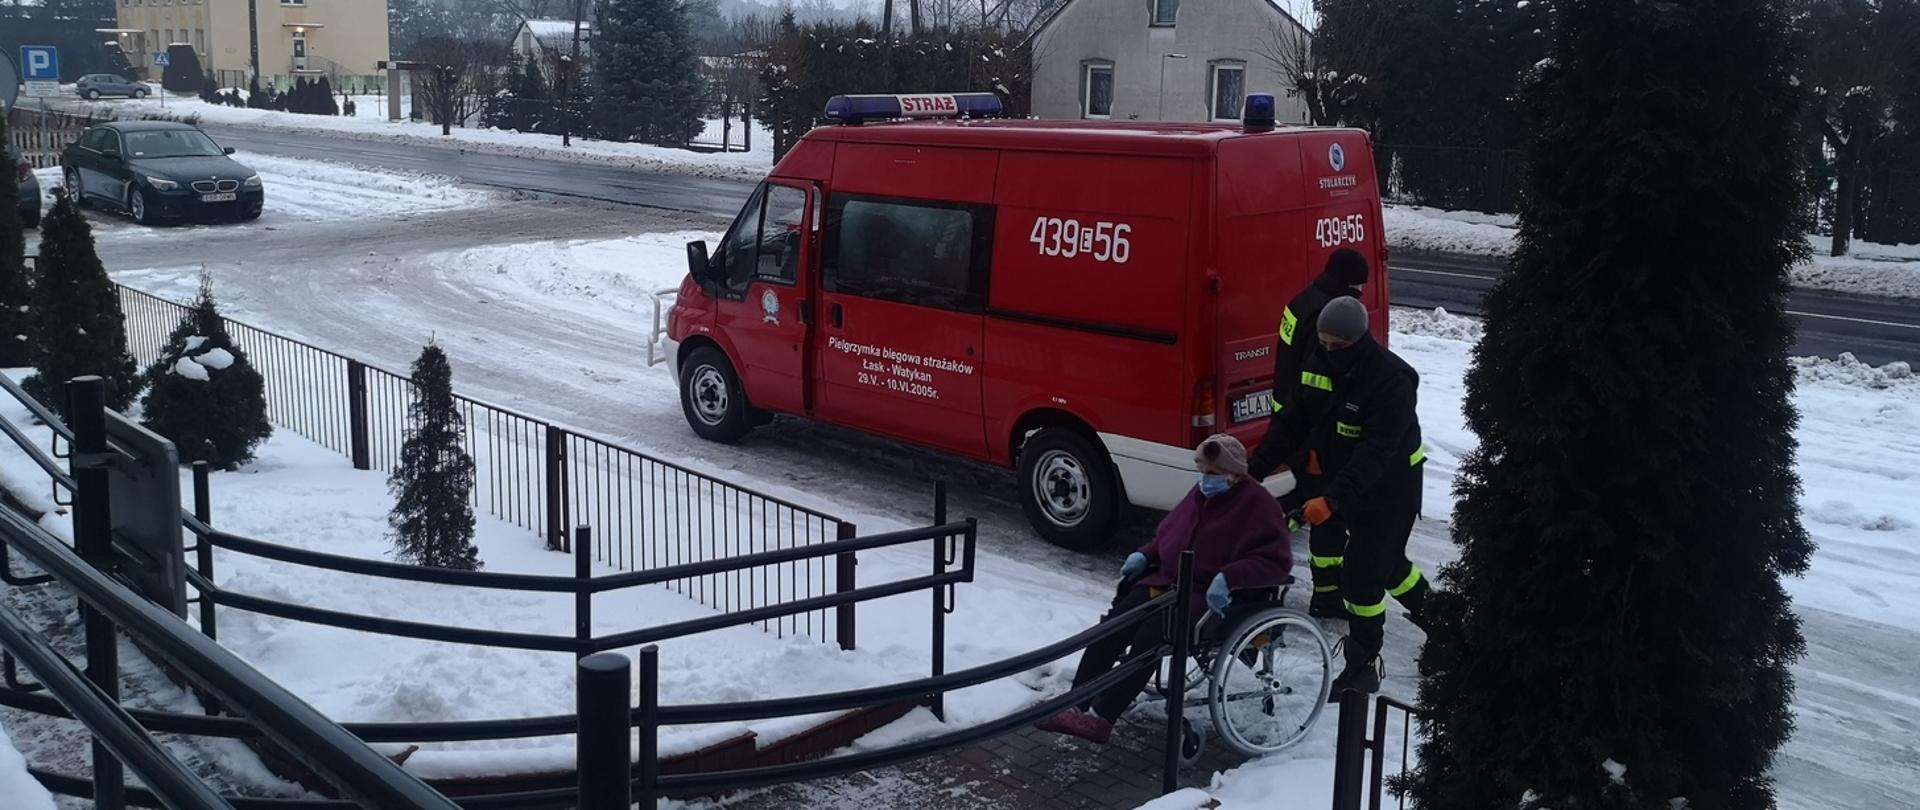 Zdjęcie przedstawia dwóch strażaków OSP pomagających osobie na wózku inwalidzkim dostać się do przychodni na szczepienie. 